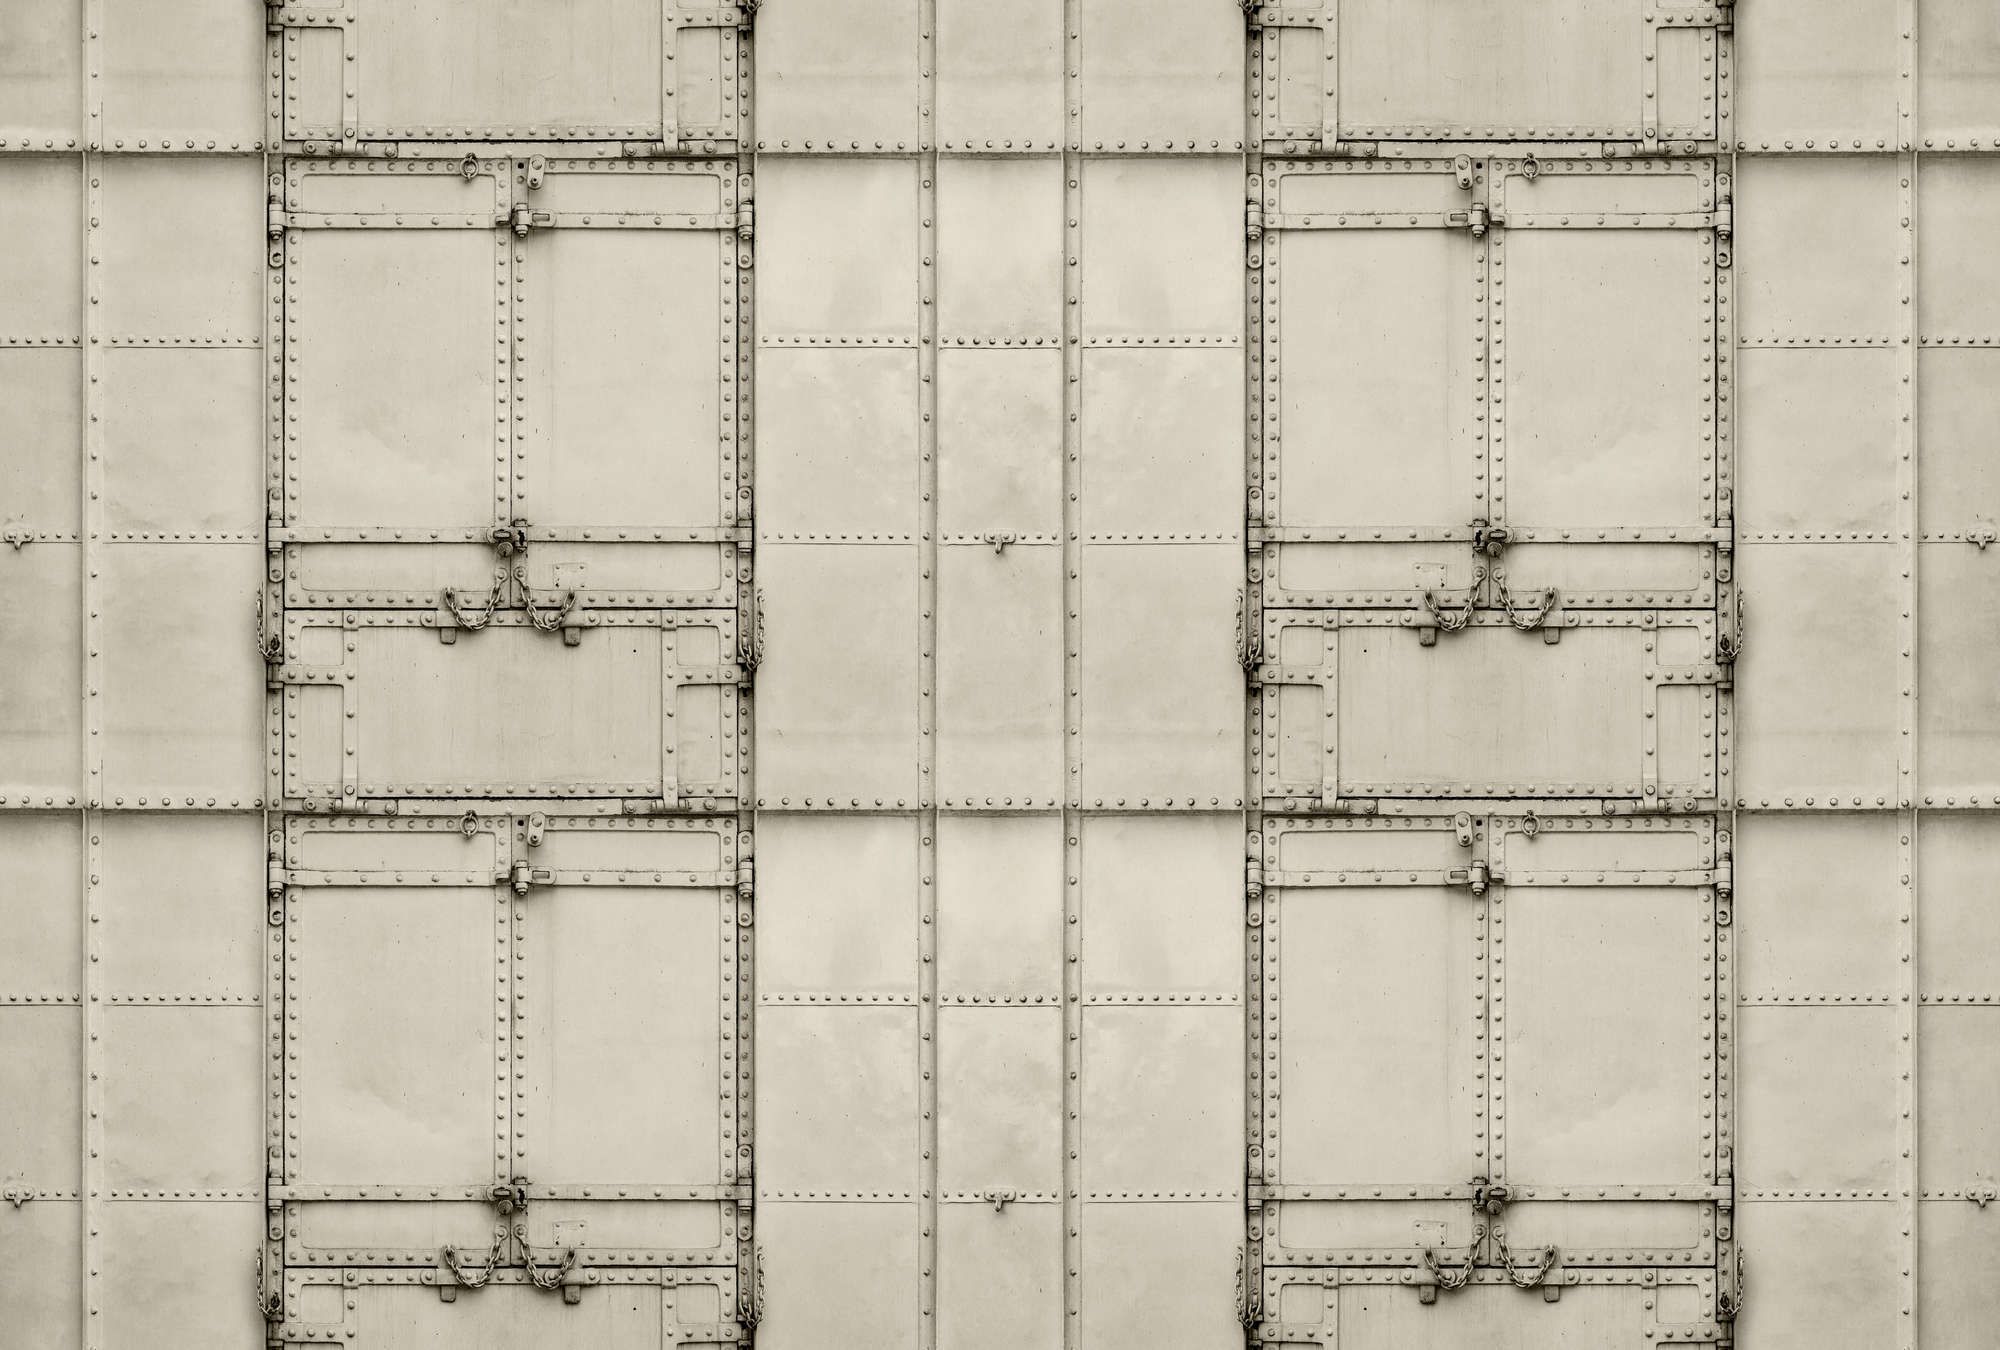             Fotomurali »madurai« - Design patchwork con piastre di metallo con rivetti e catene - Materiali non tessuto liscio e leggermente perlato
        